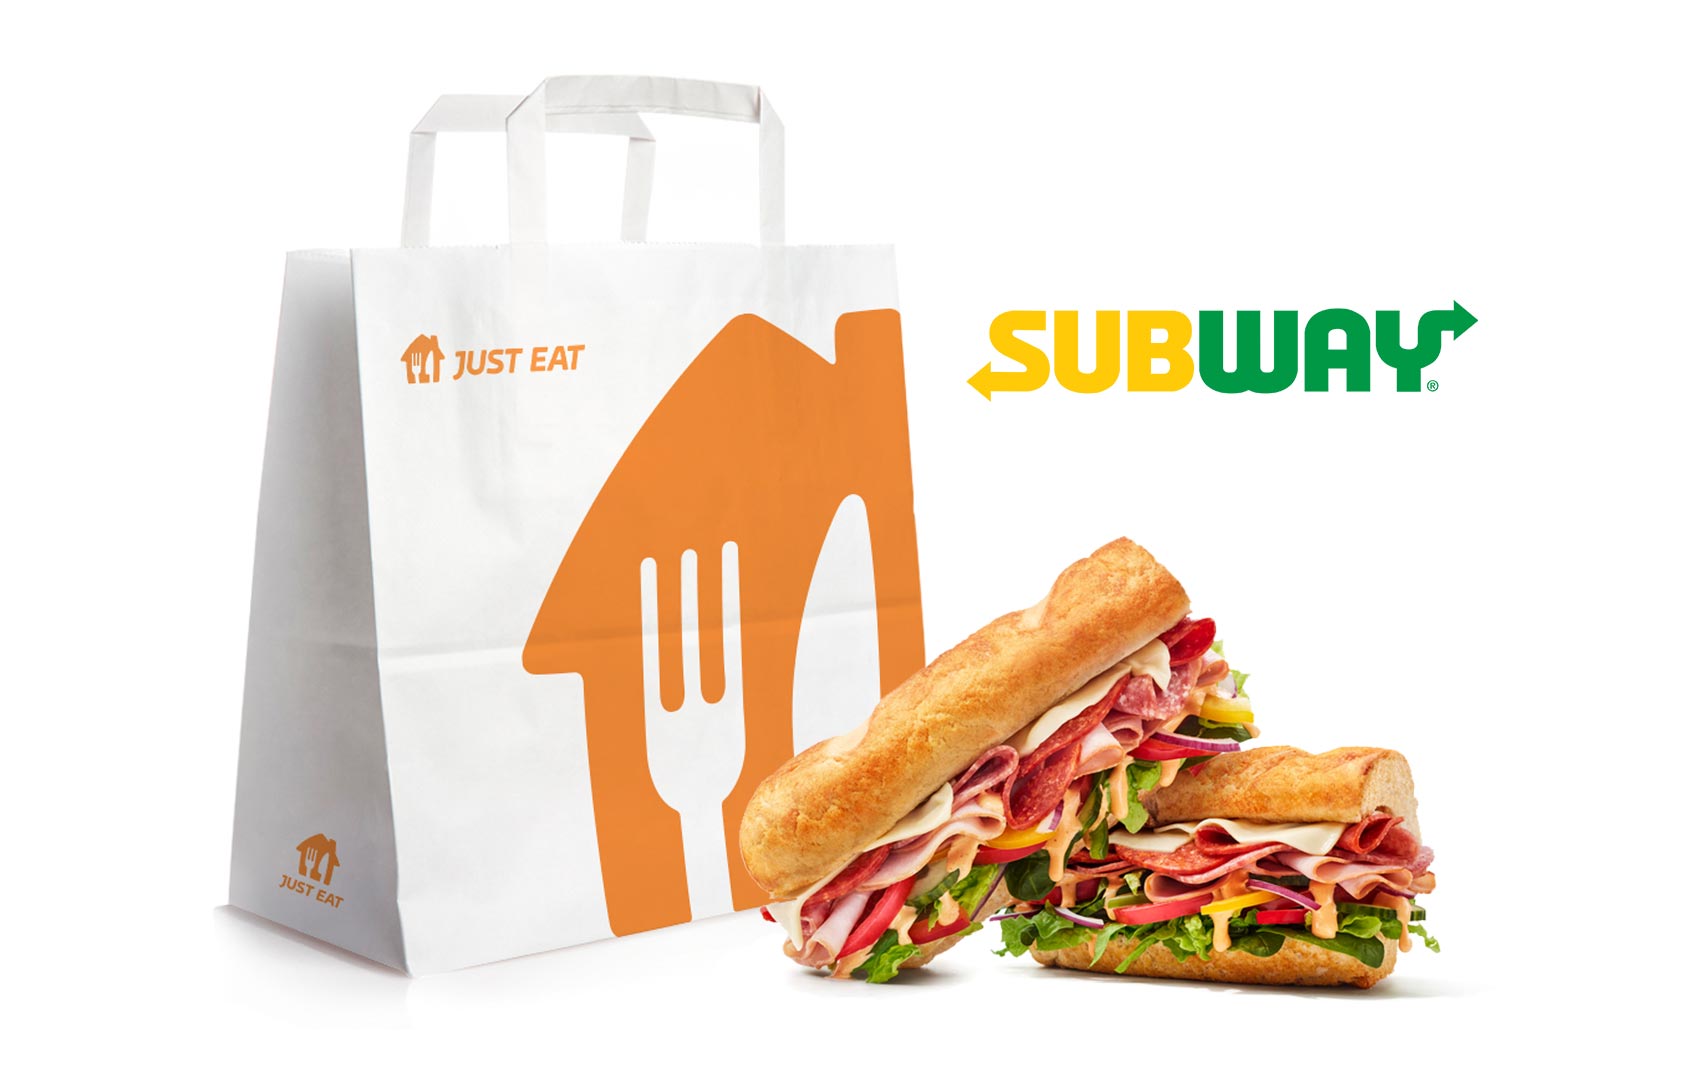 Subway Just Eat